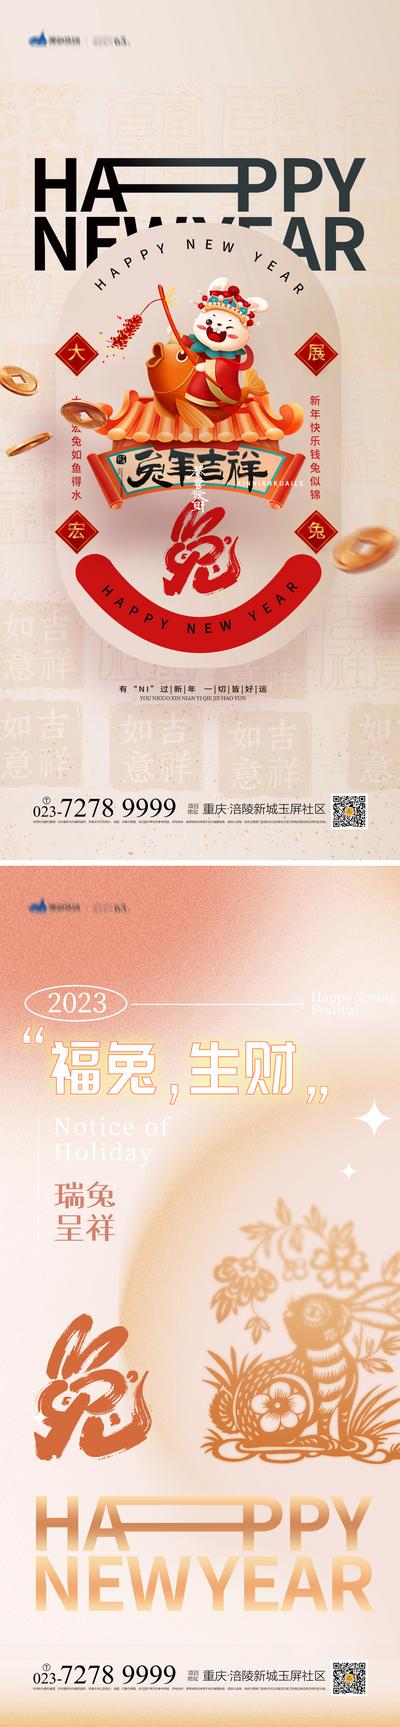 南门网 海报 2023年 兔年 元旦节 新年祝福 兔子 剪纸